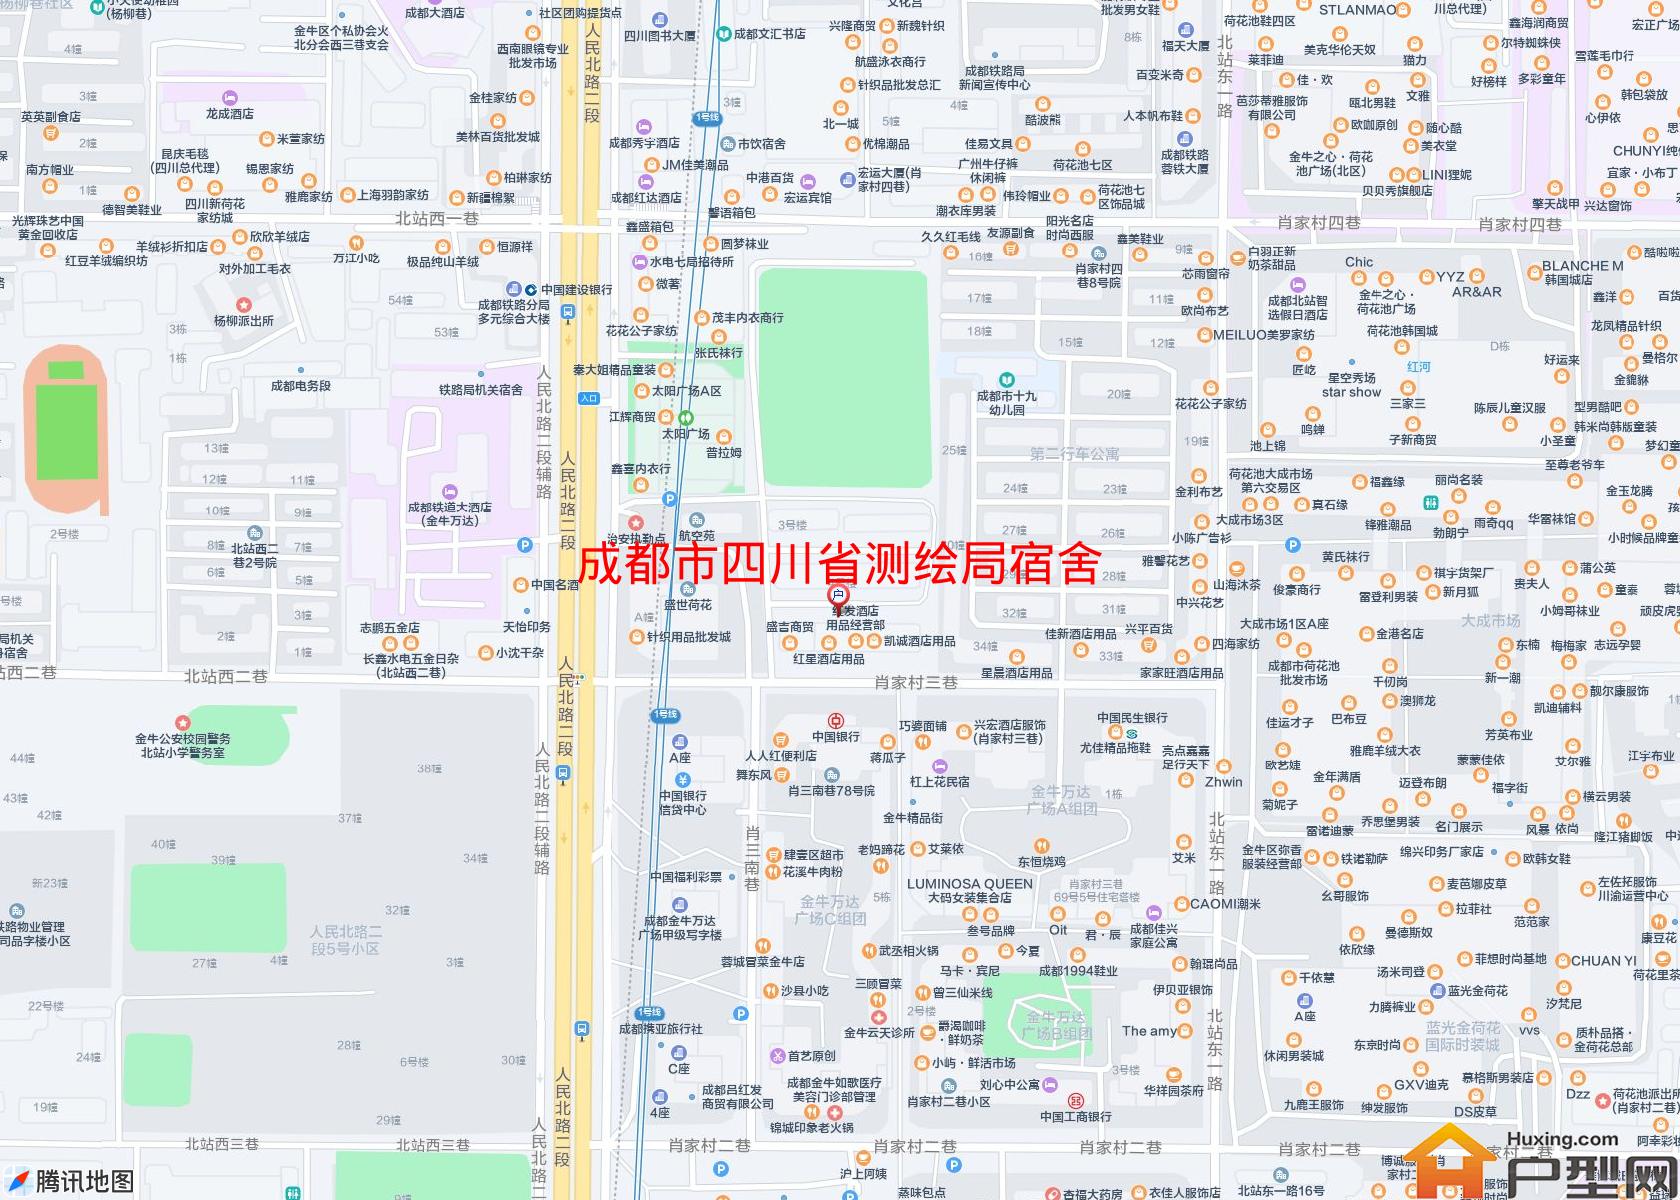 四川省测绘局宿舍小区 - 户型网